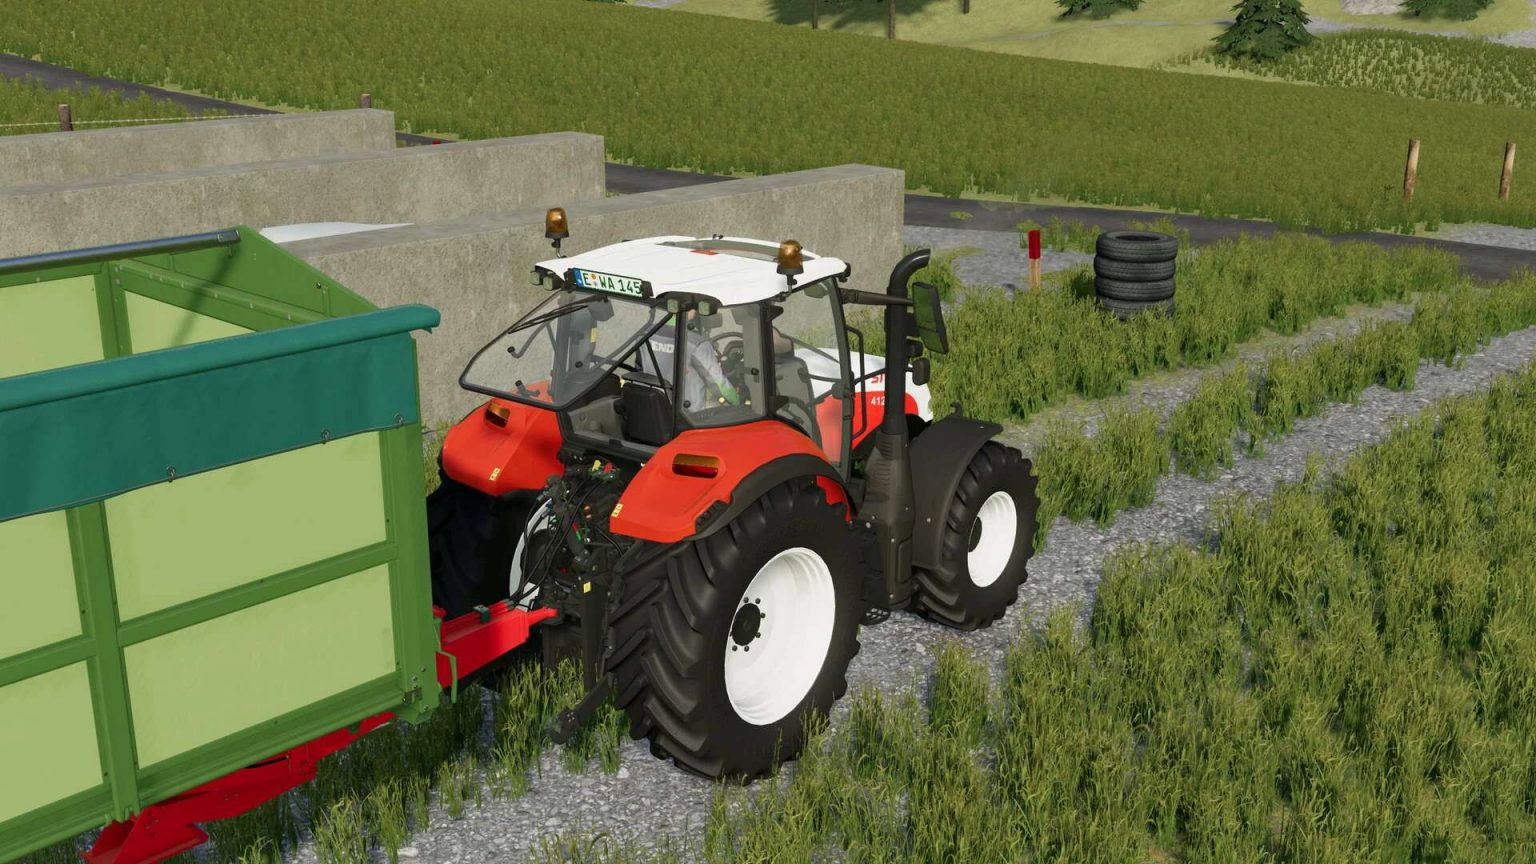 Steyr Multi Serie 2016 V10 Fs22 Farming Simulator 22 Mod Fs22 Mod 1315